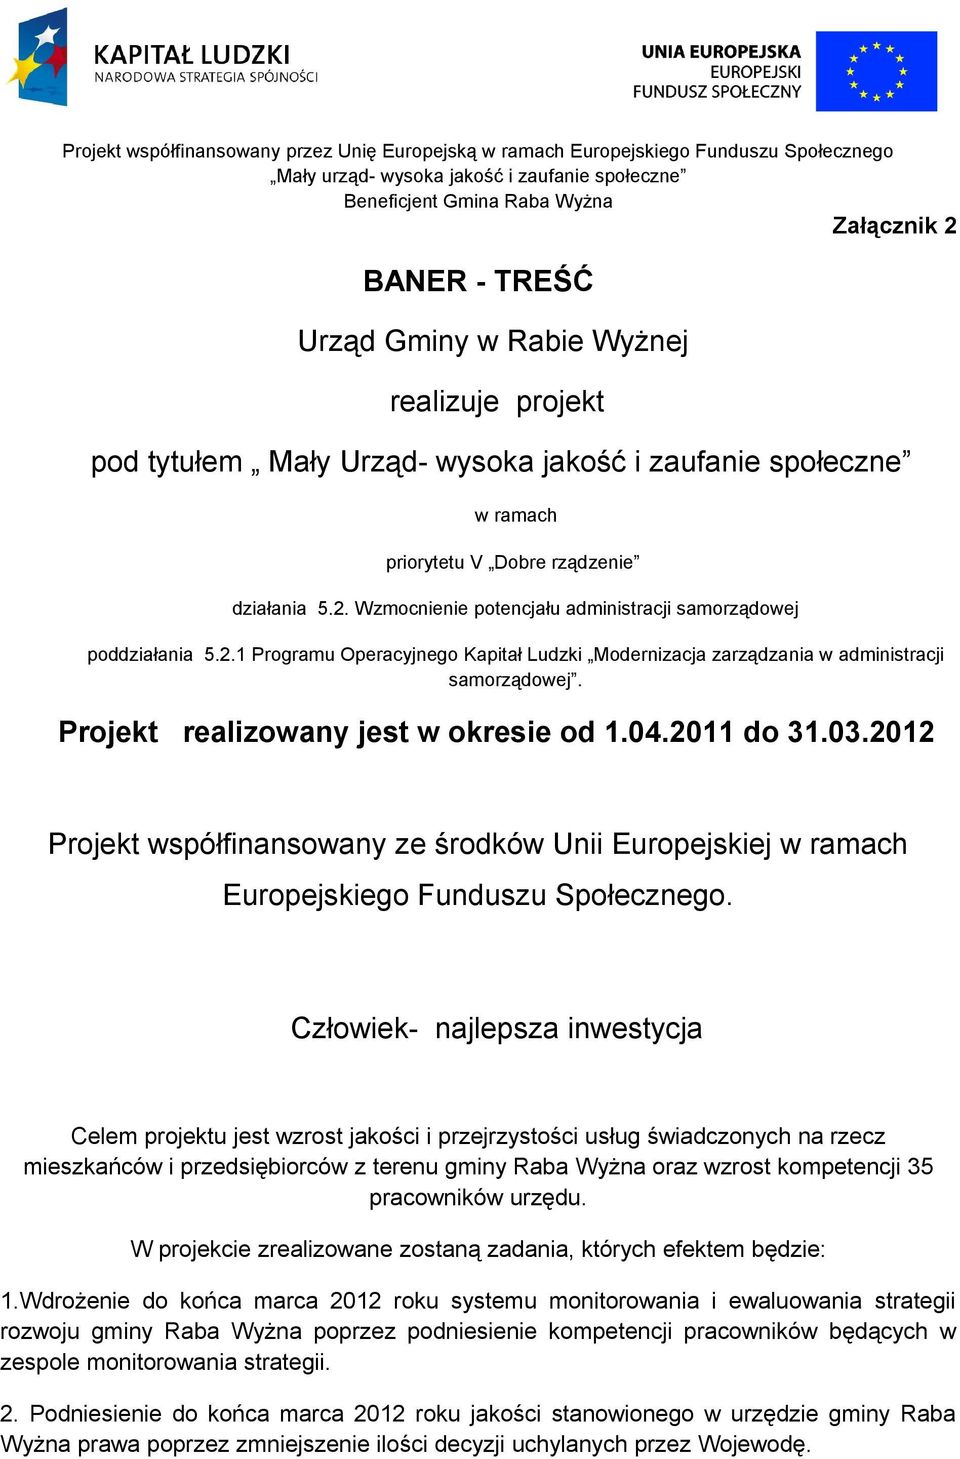 2012 Projekt współfinansowany ze środków Unii Europejskiej w ramach Europejskiego Funduszu Społecznego.